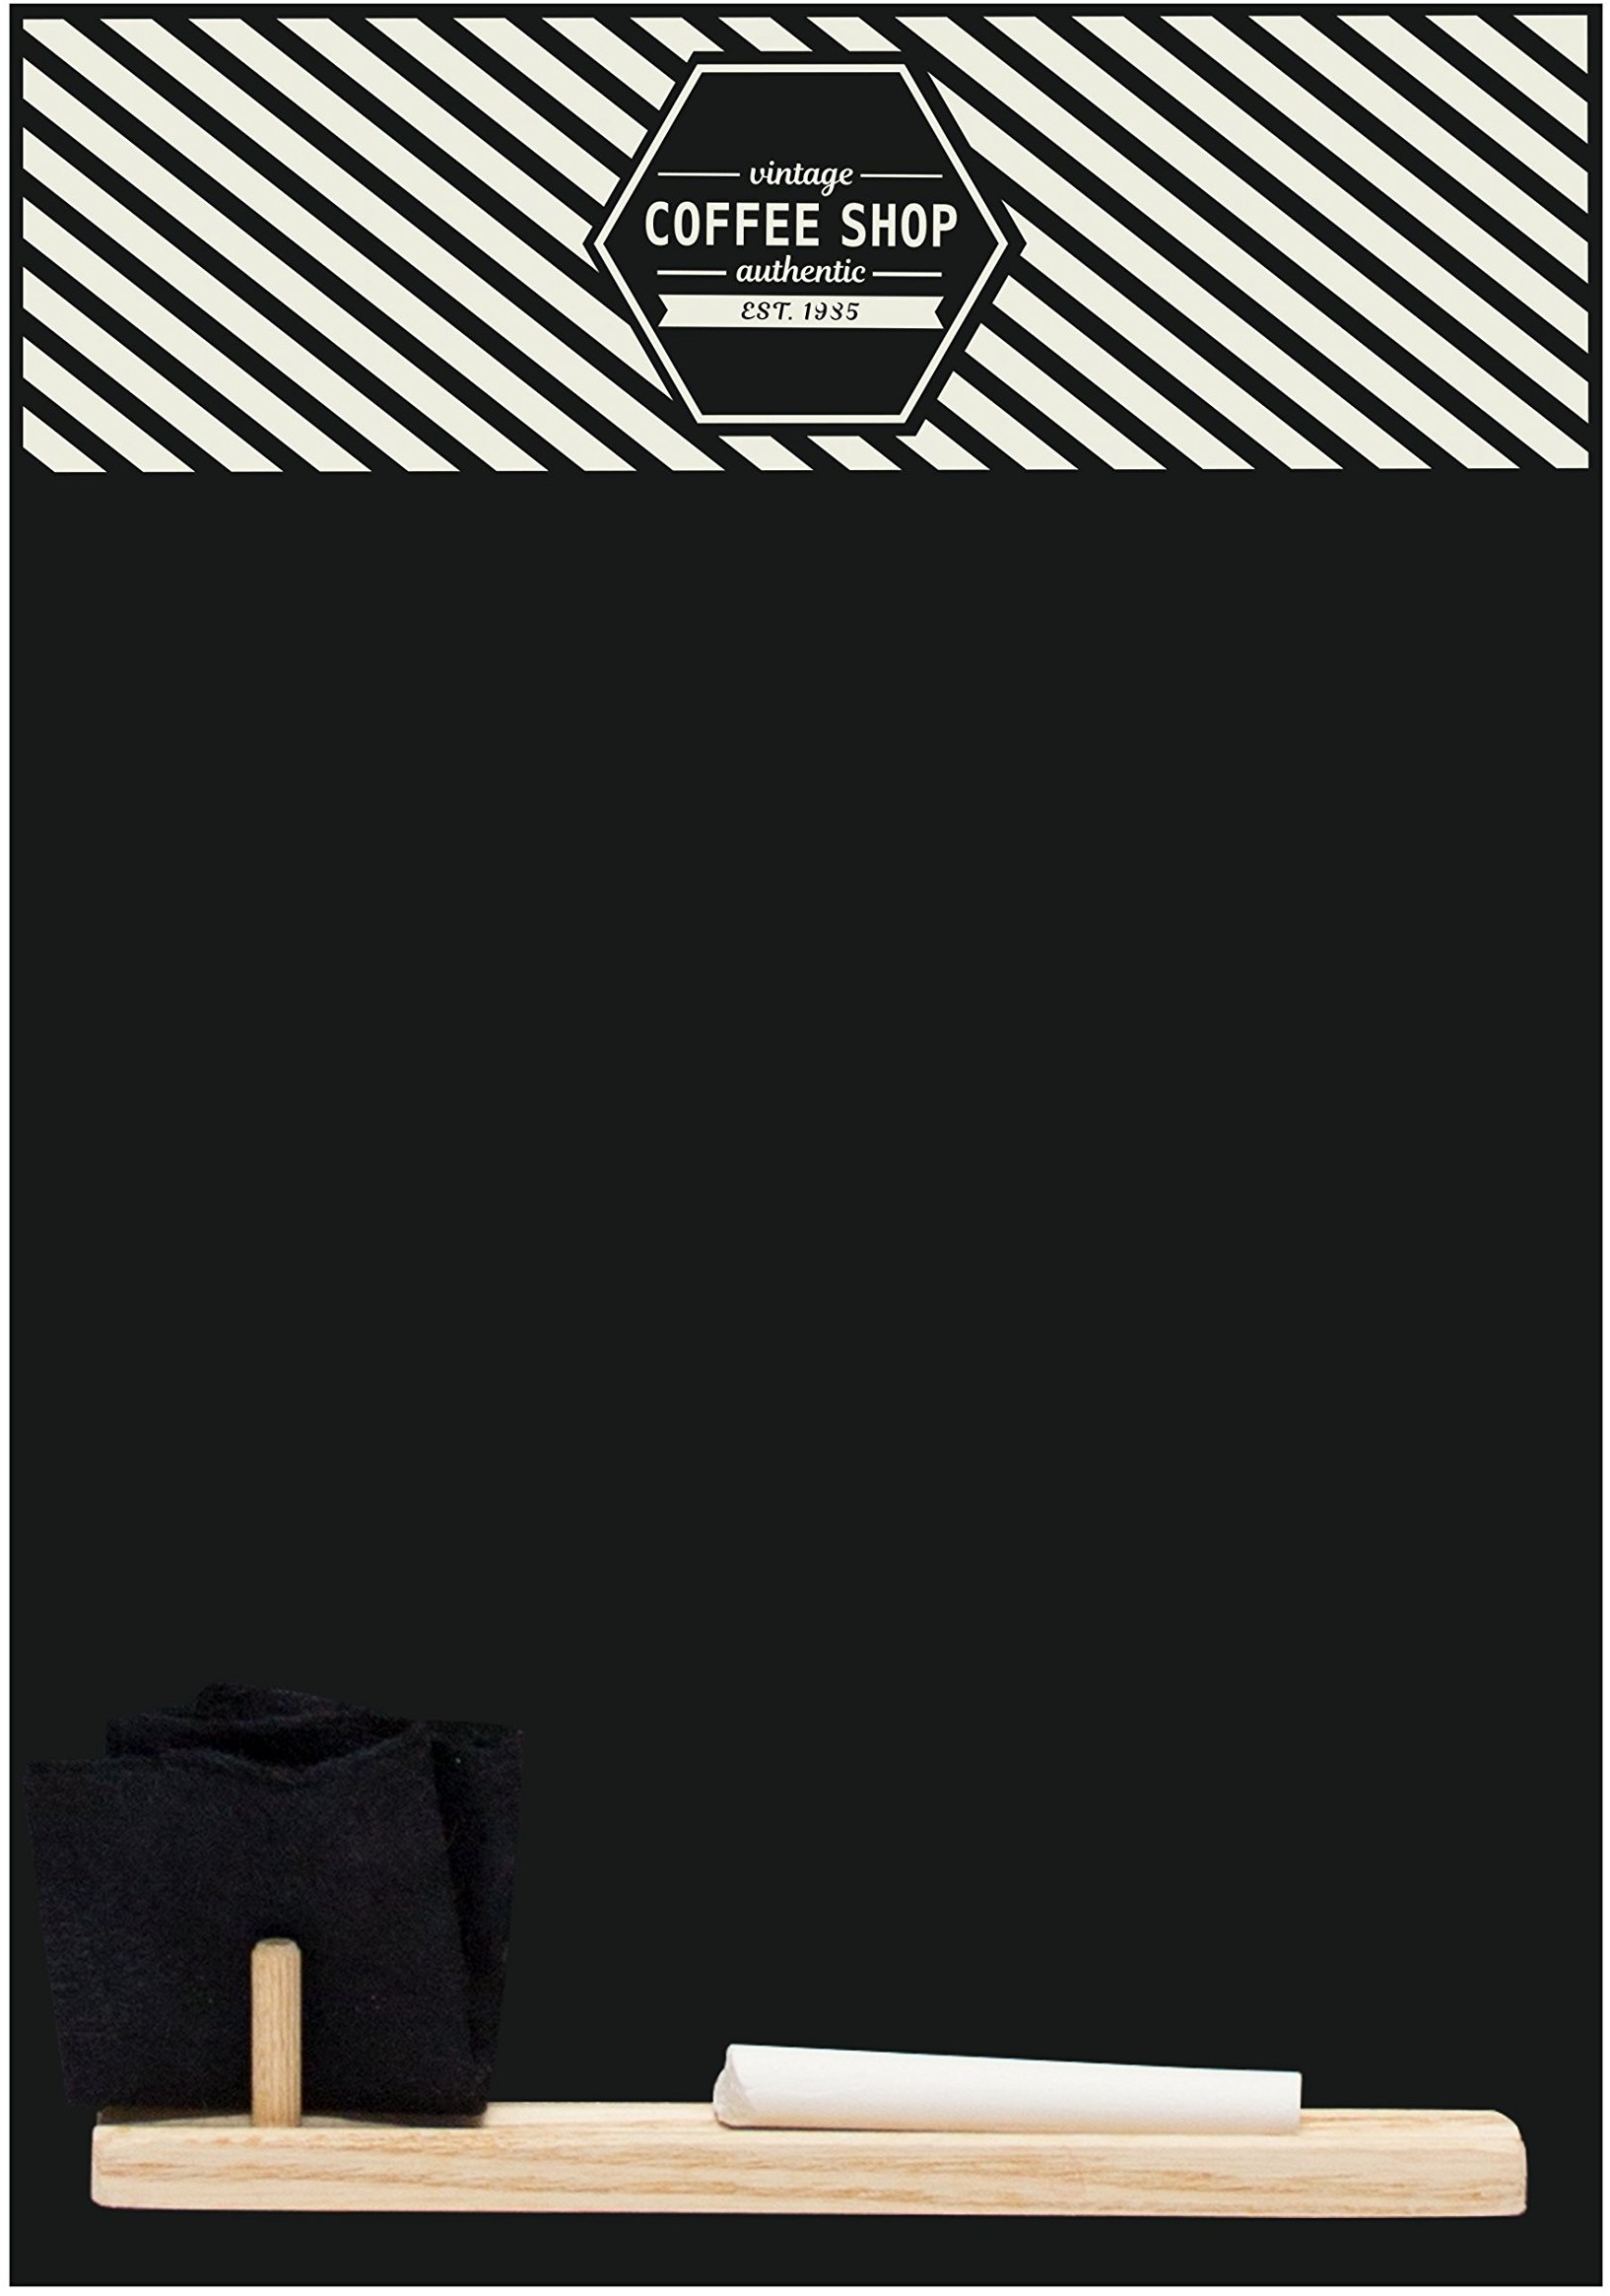 Kreidetafeln UK Vintage Coffee Shop 'Kleine Memo Kreidetafel/Tafel/Küche Board mit Tablett, Kreide und Filz Radiergummi. Booth Design Range., Holz, schwarz, 29,7 x 20,7 x 1 cm